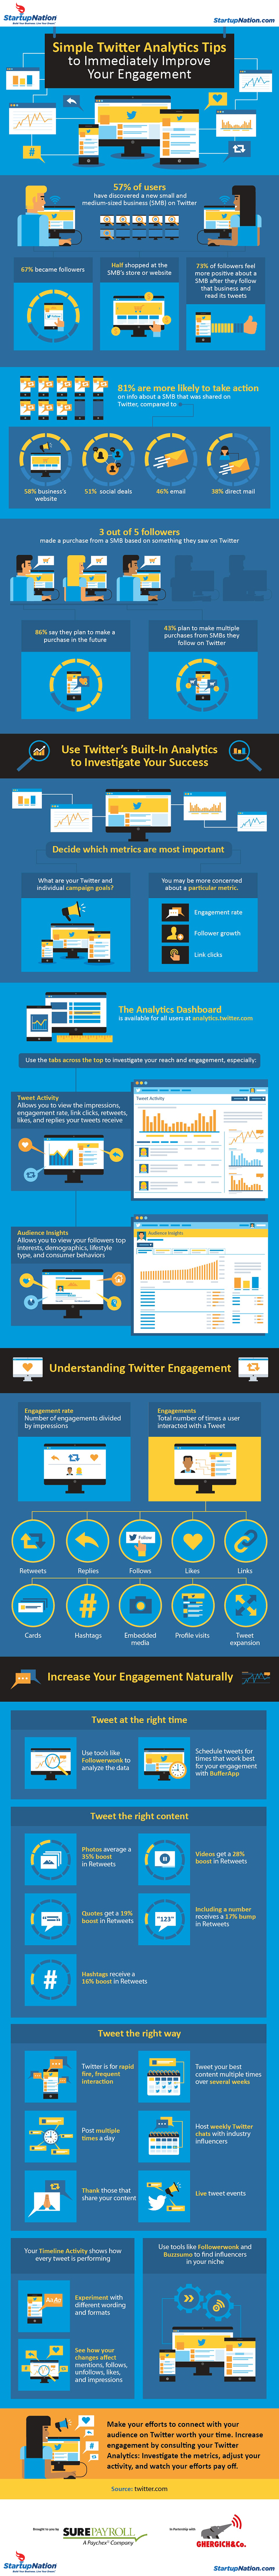 Twitter analytics engagement